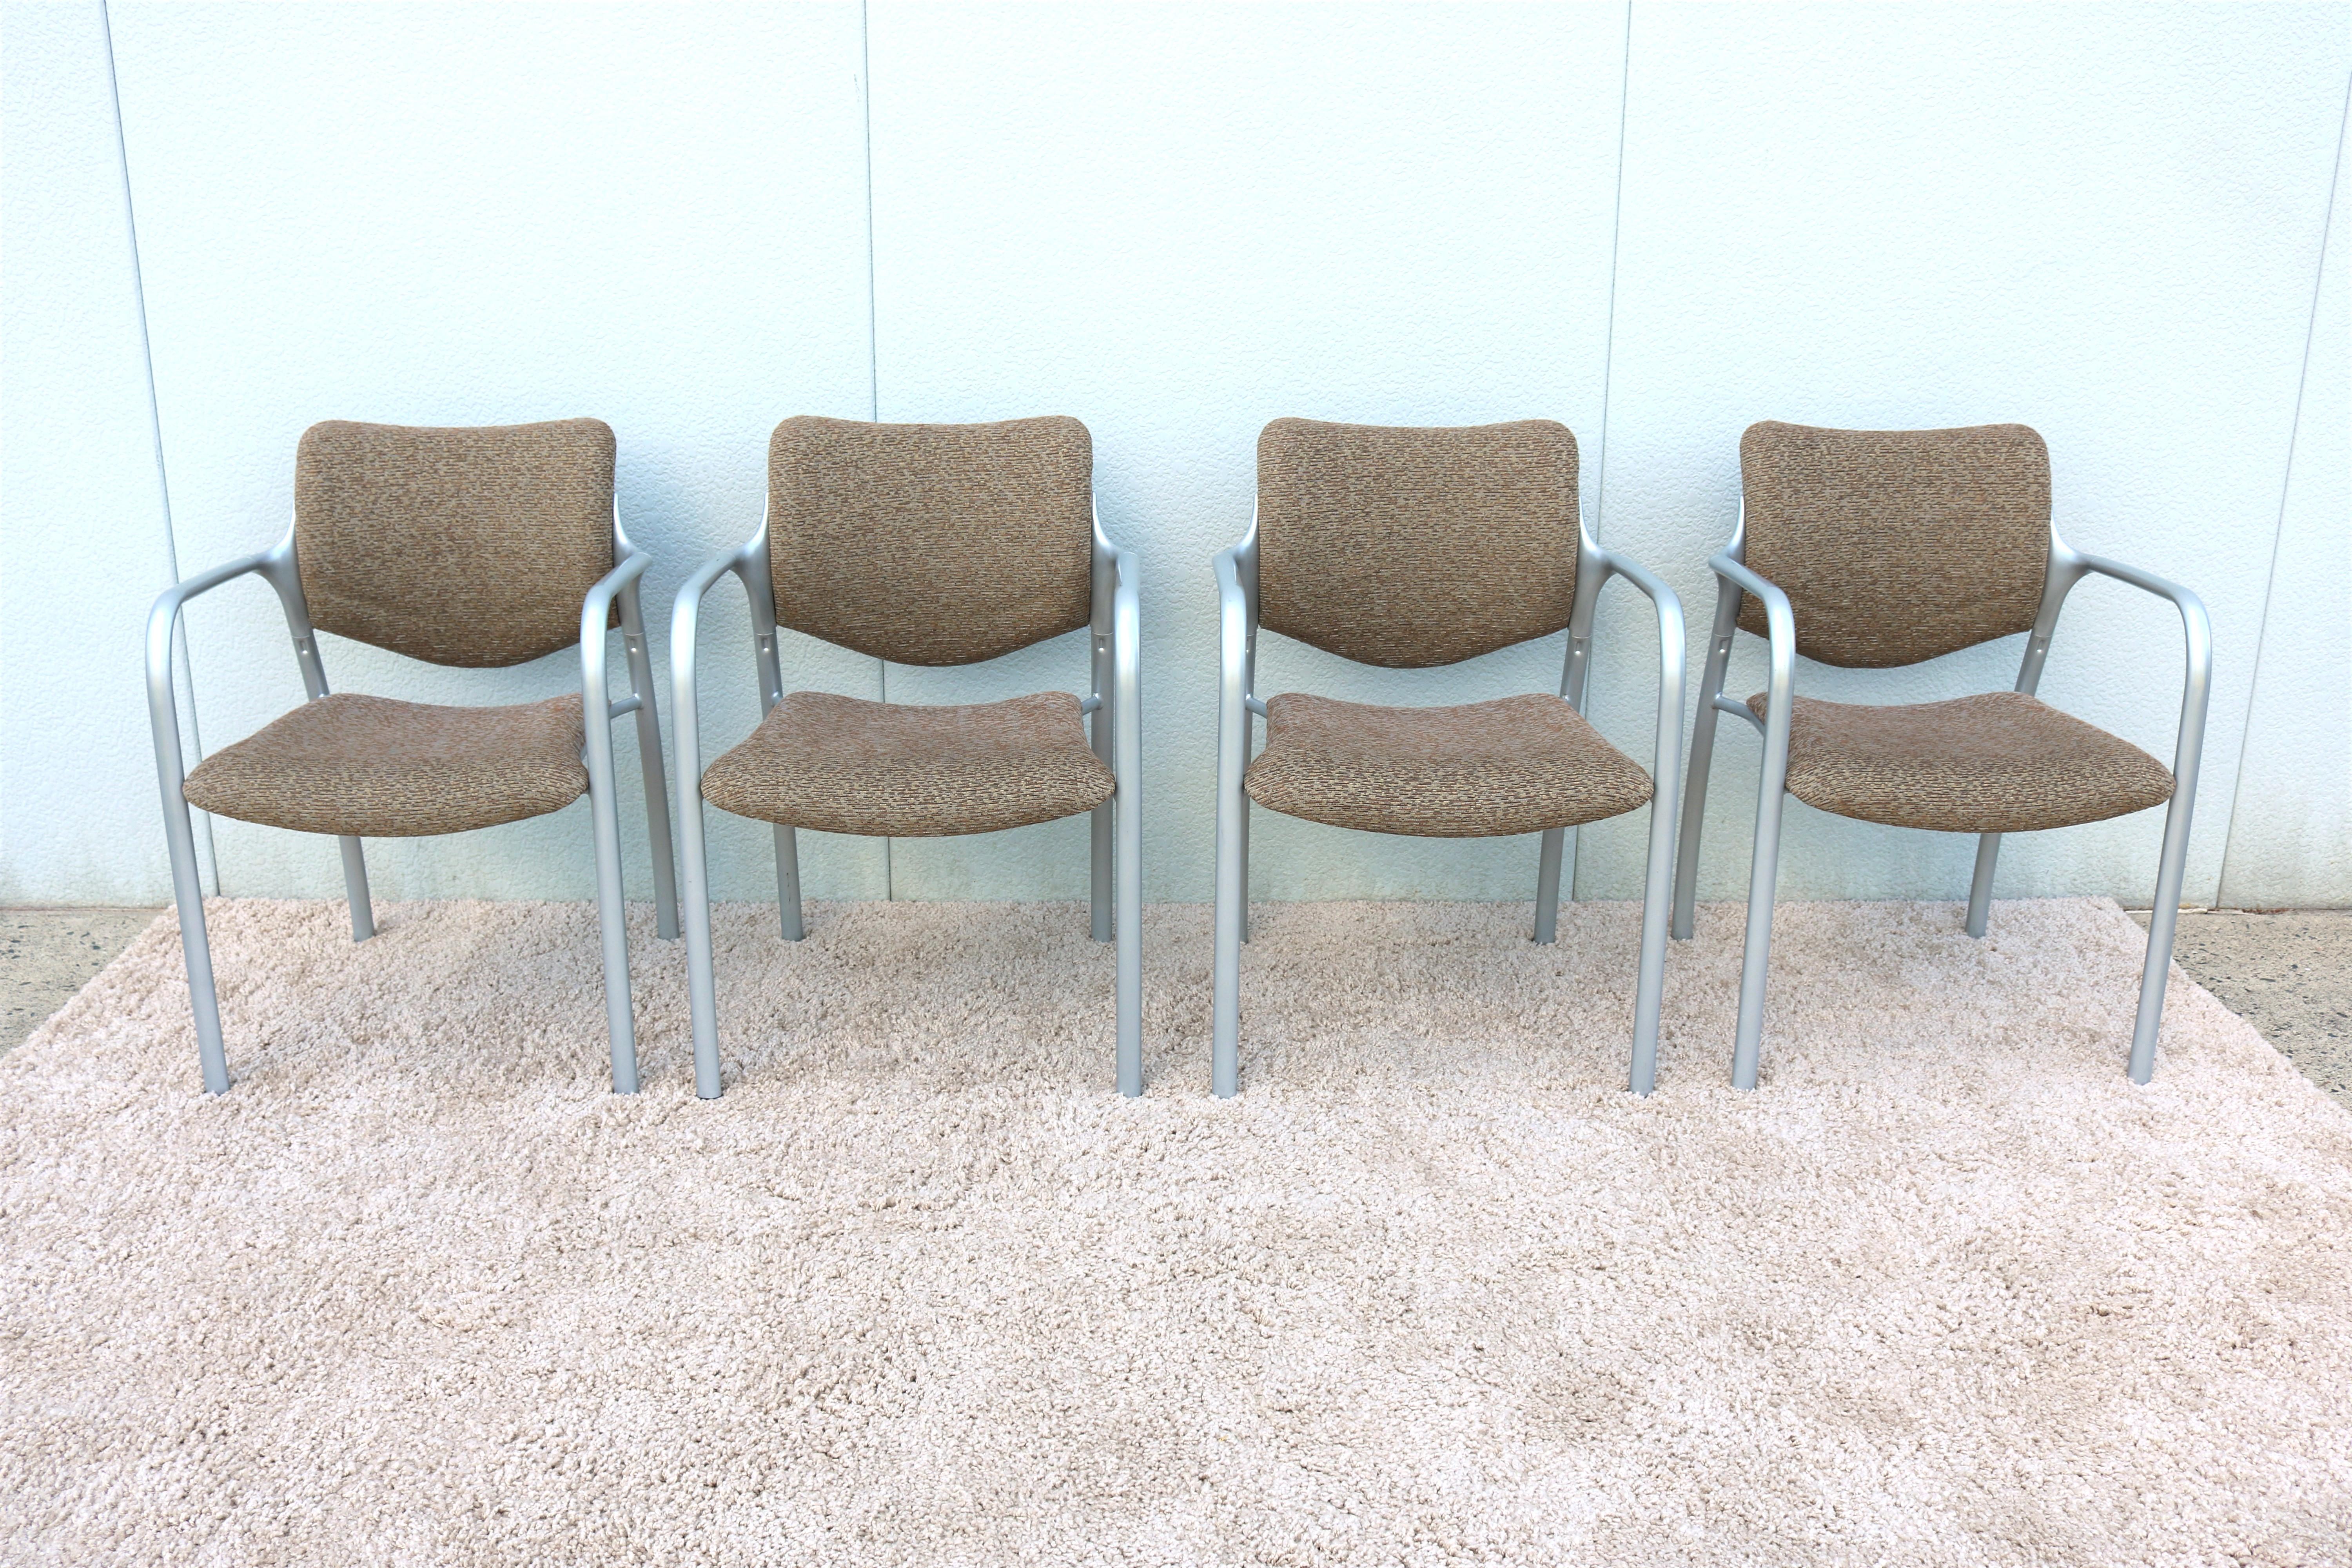 La chaise d'appoint empilable STACKABL d'Herman Miller est très confortable et présente un aspect moderne et contemporain.
Avec ses coussins épais et ses contours sains, il offre aux gens un endroit confortable où s'asseoir.
Sa conception légère et